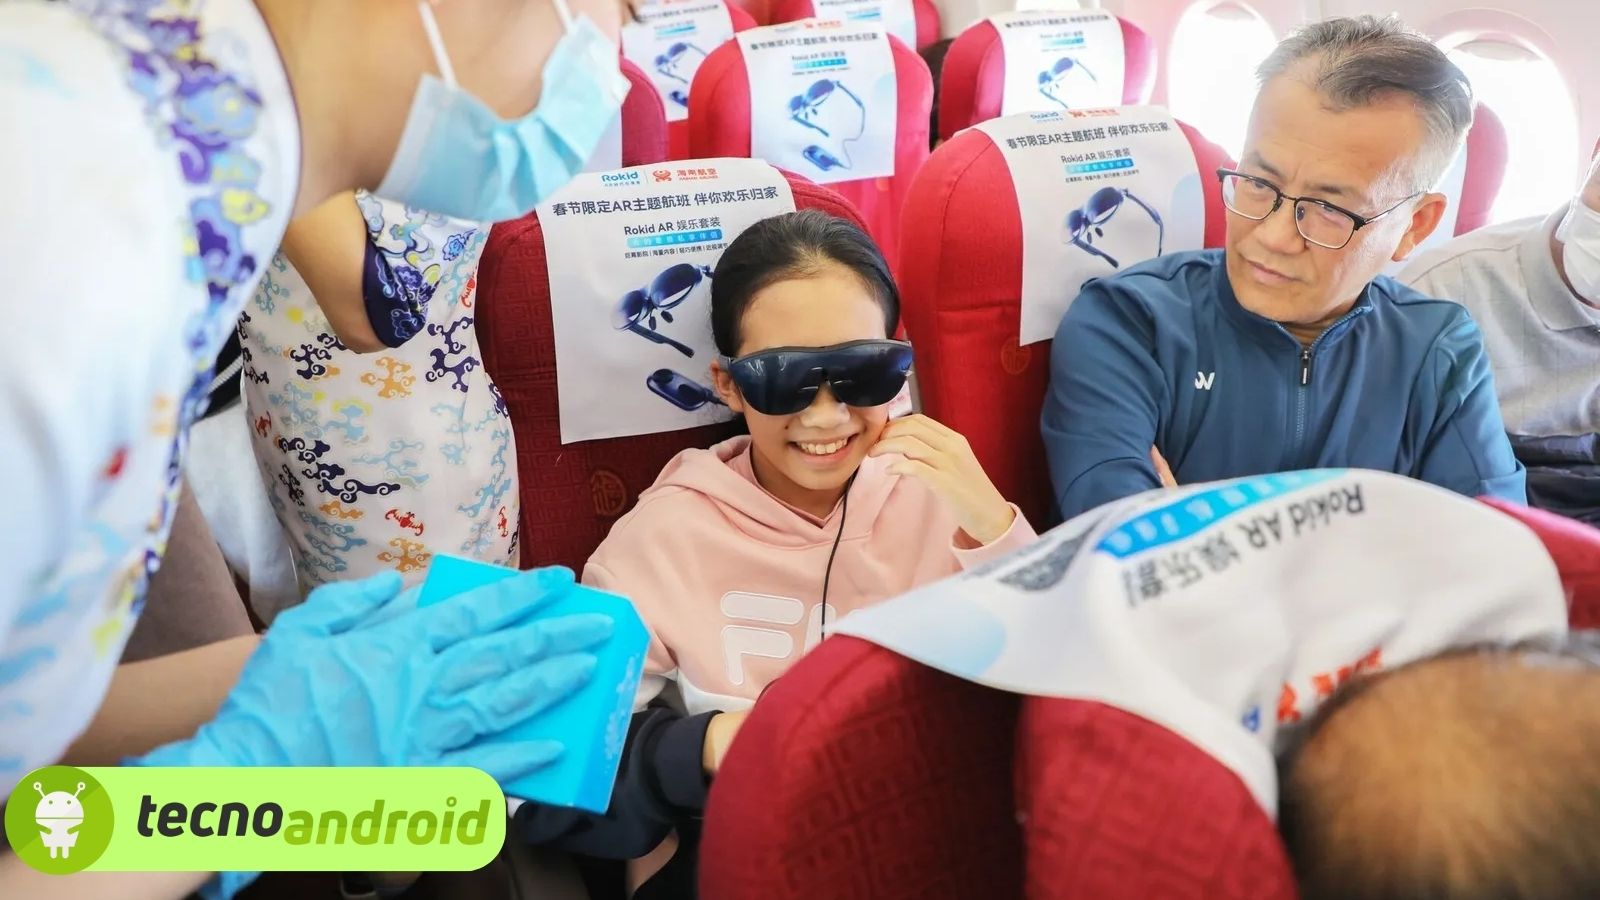 Occhiali AR in volo per intrattenere i passeggeri: accade in Cina